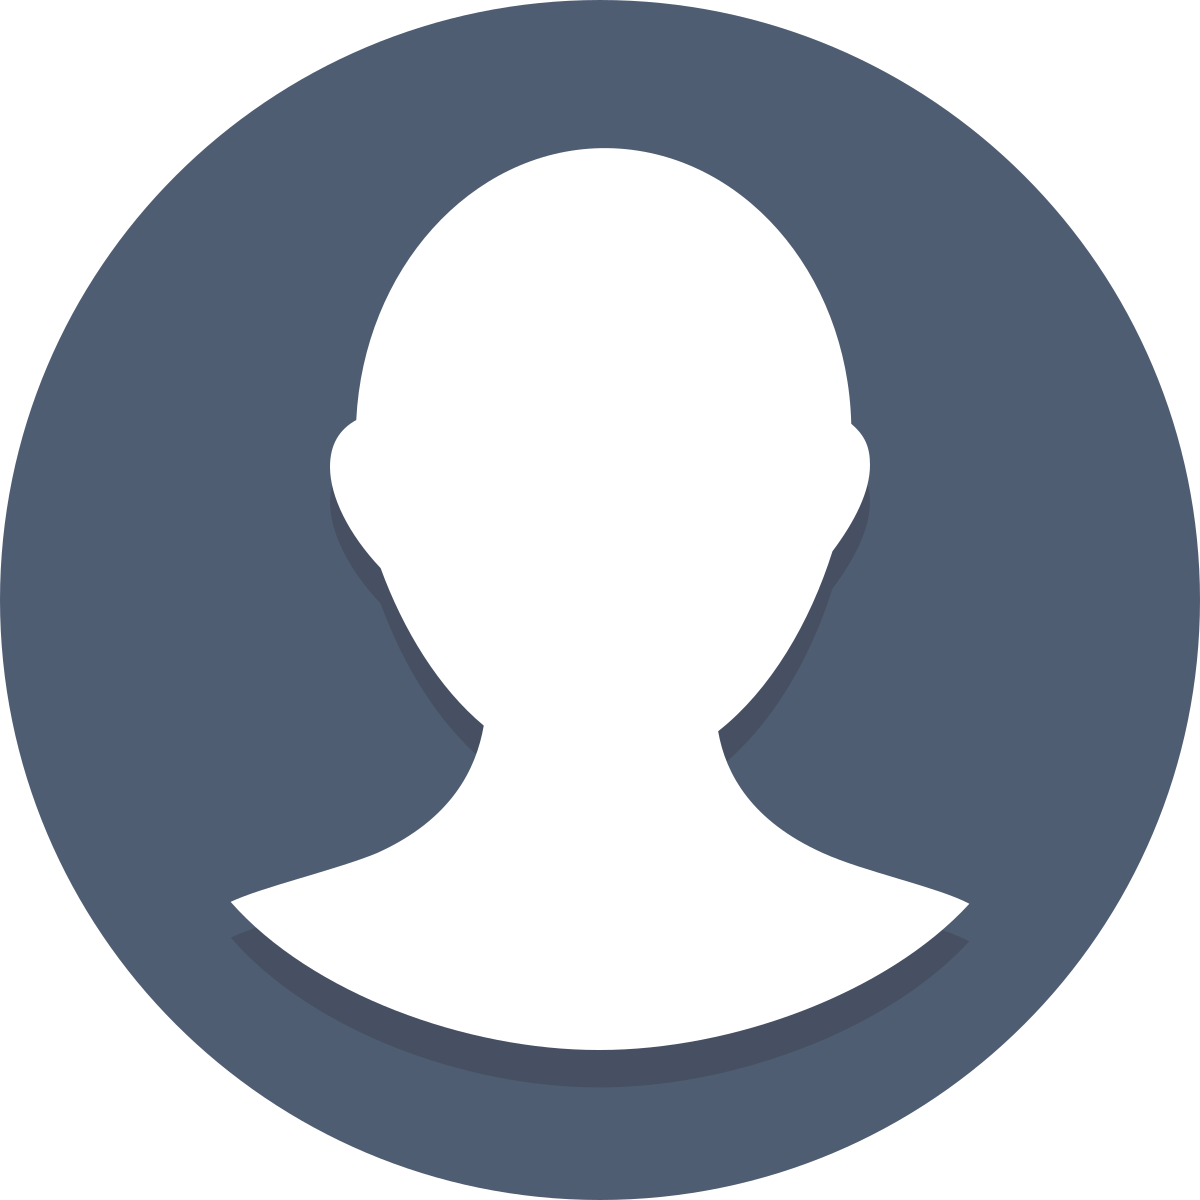 Profile sotwe. Иконка профиля. Значок аватара. Круглый аватар. Изображение пользователя.